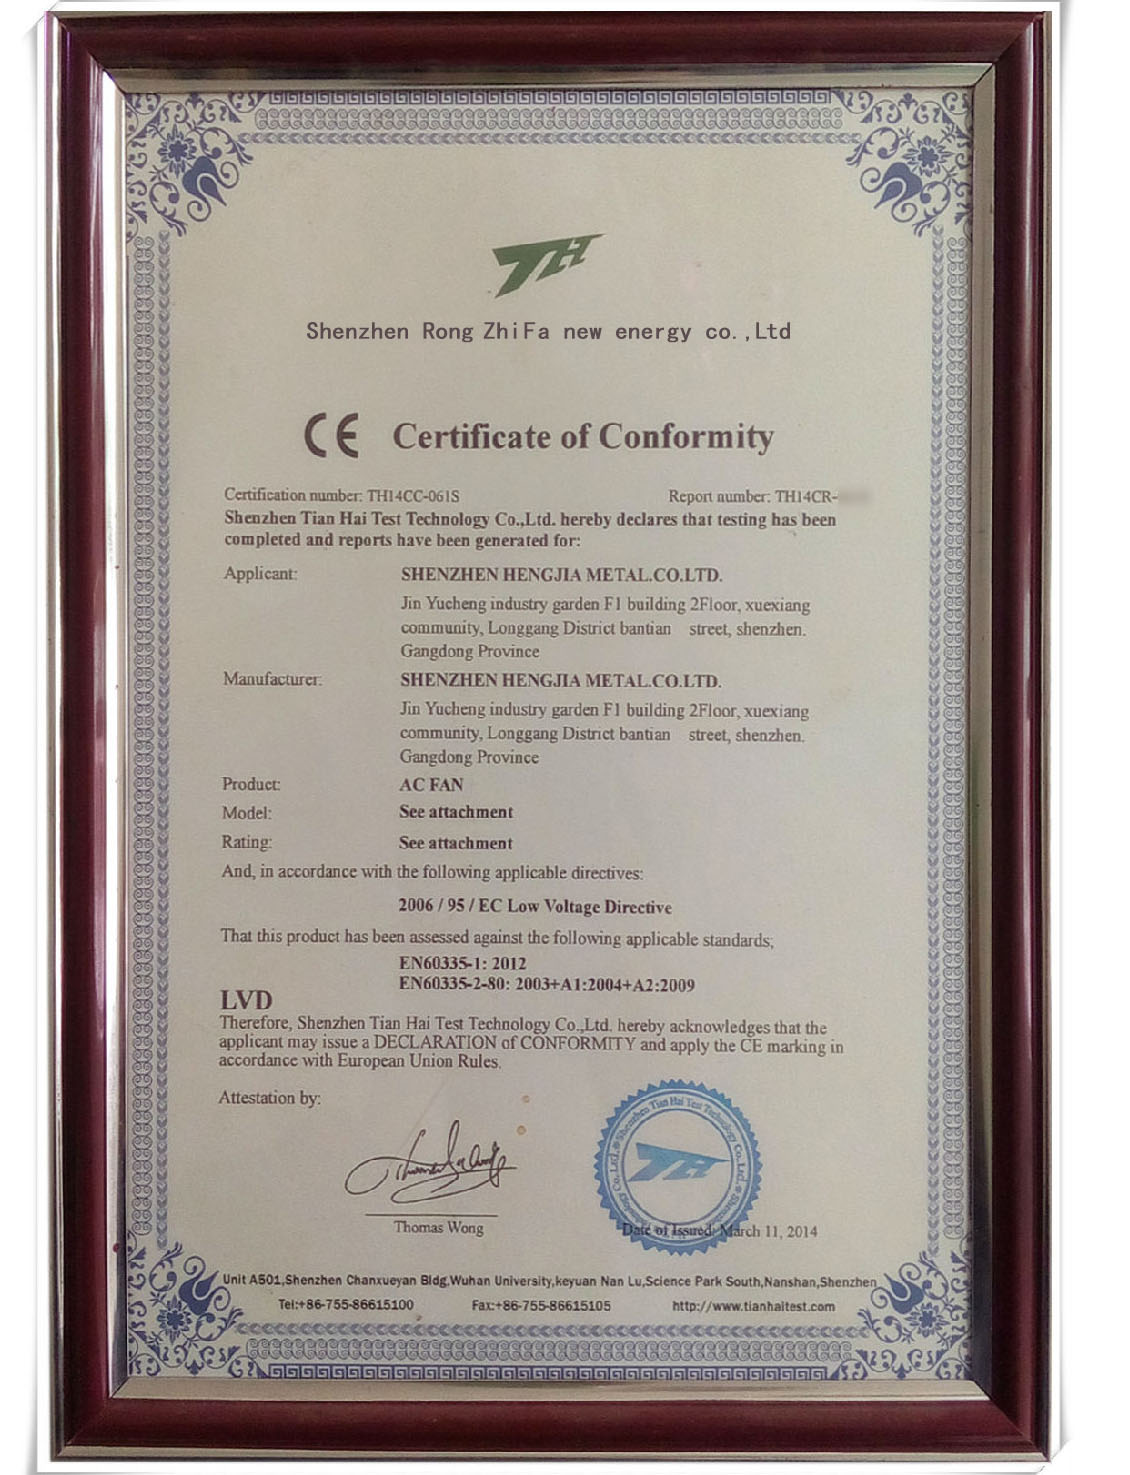 散热风扇CE认证证书(2)